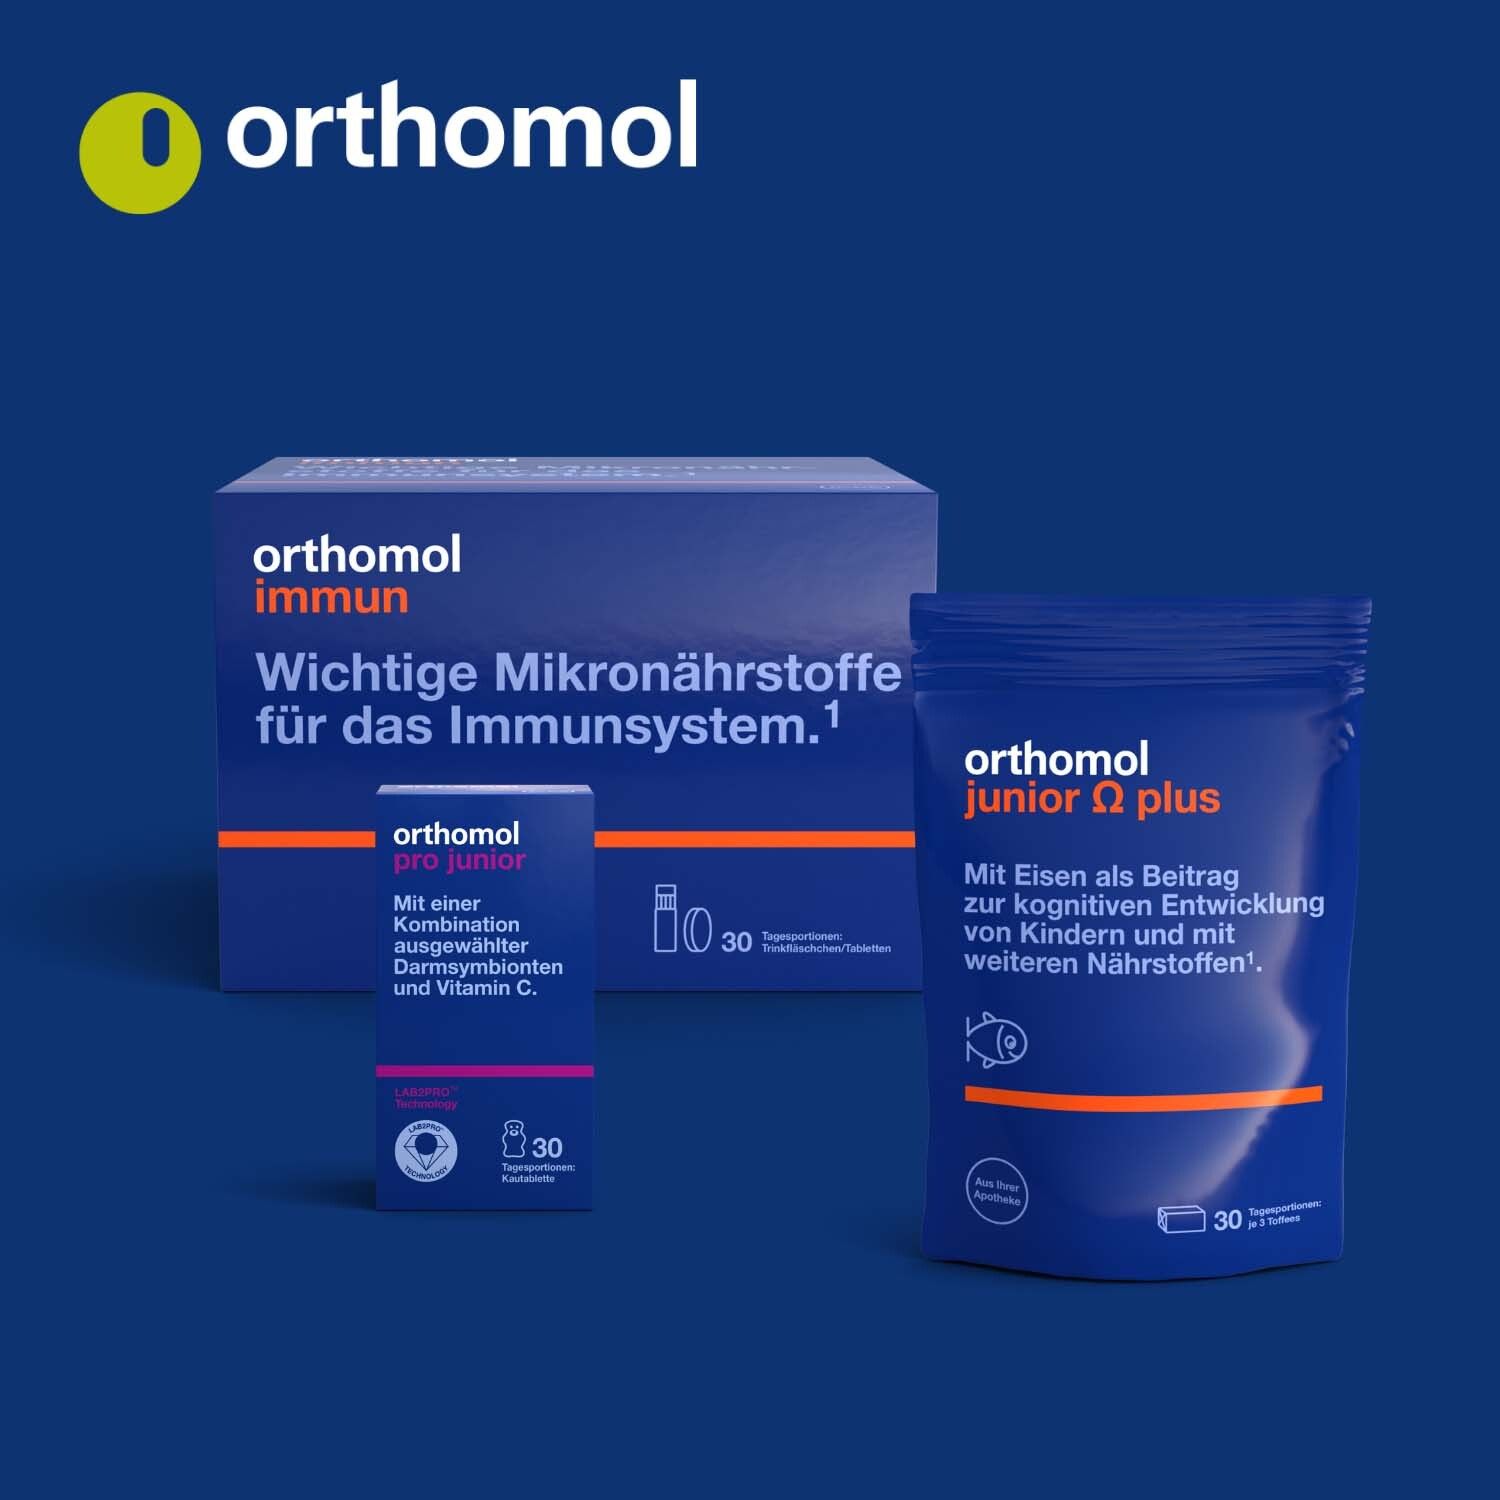 Orthomol junior C plus - mit Vitamin C als Beitrag zu einer normalen Funktion des Immunsystems - Himbeer/Limetten-Geschmack - Direktgranulat